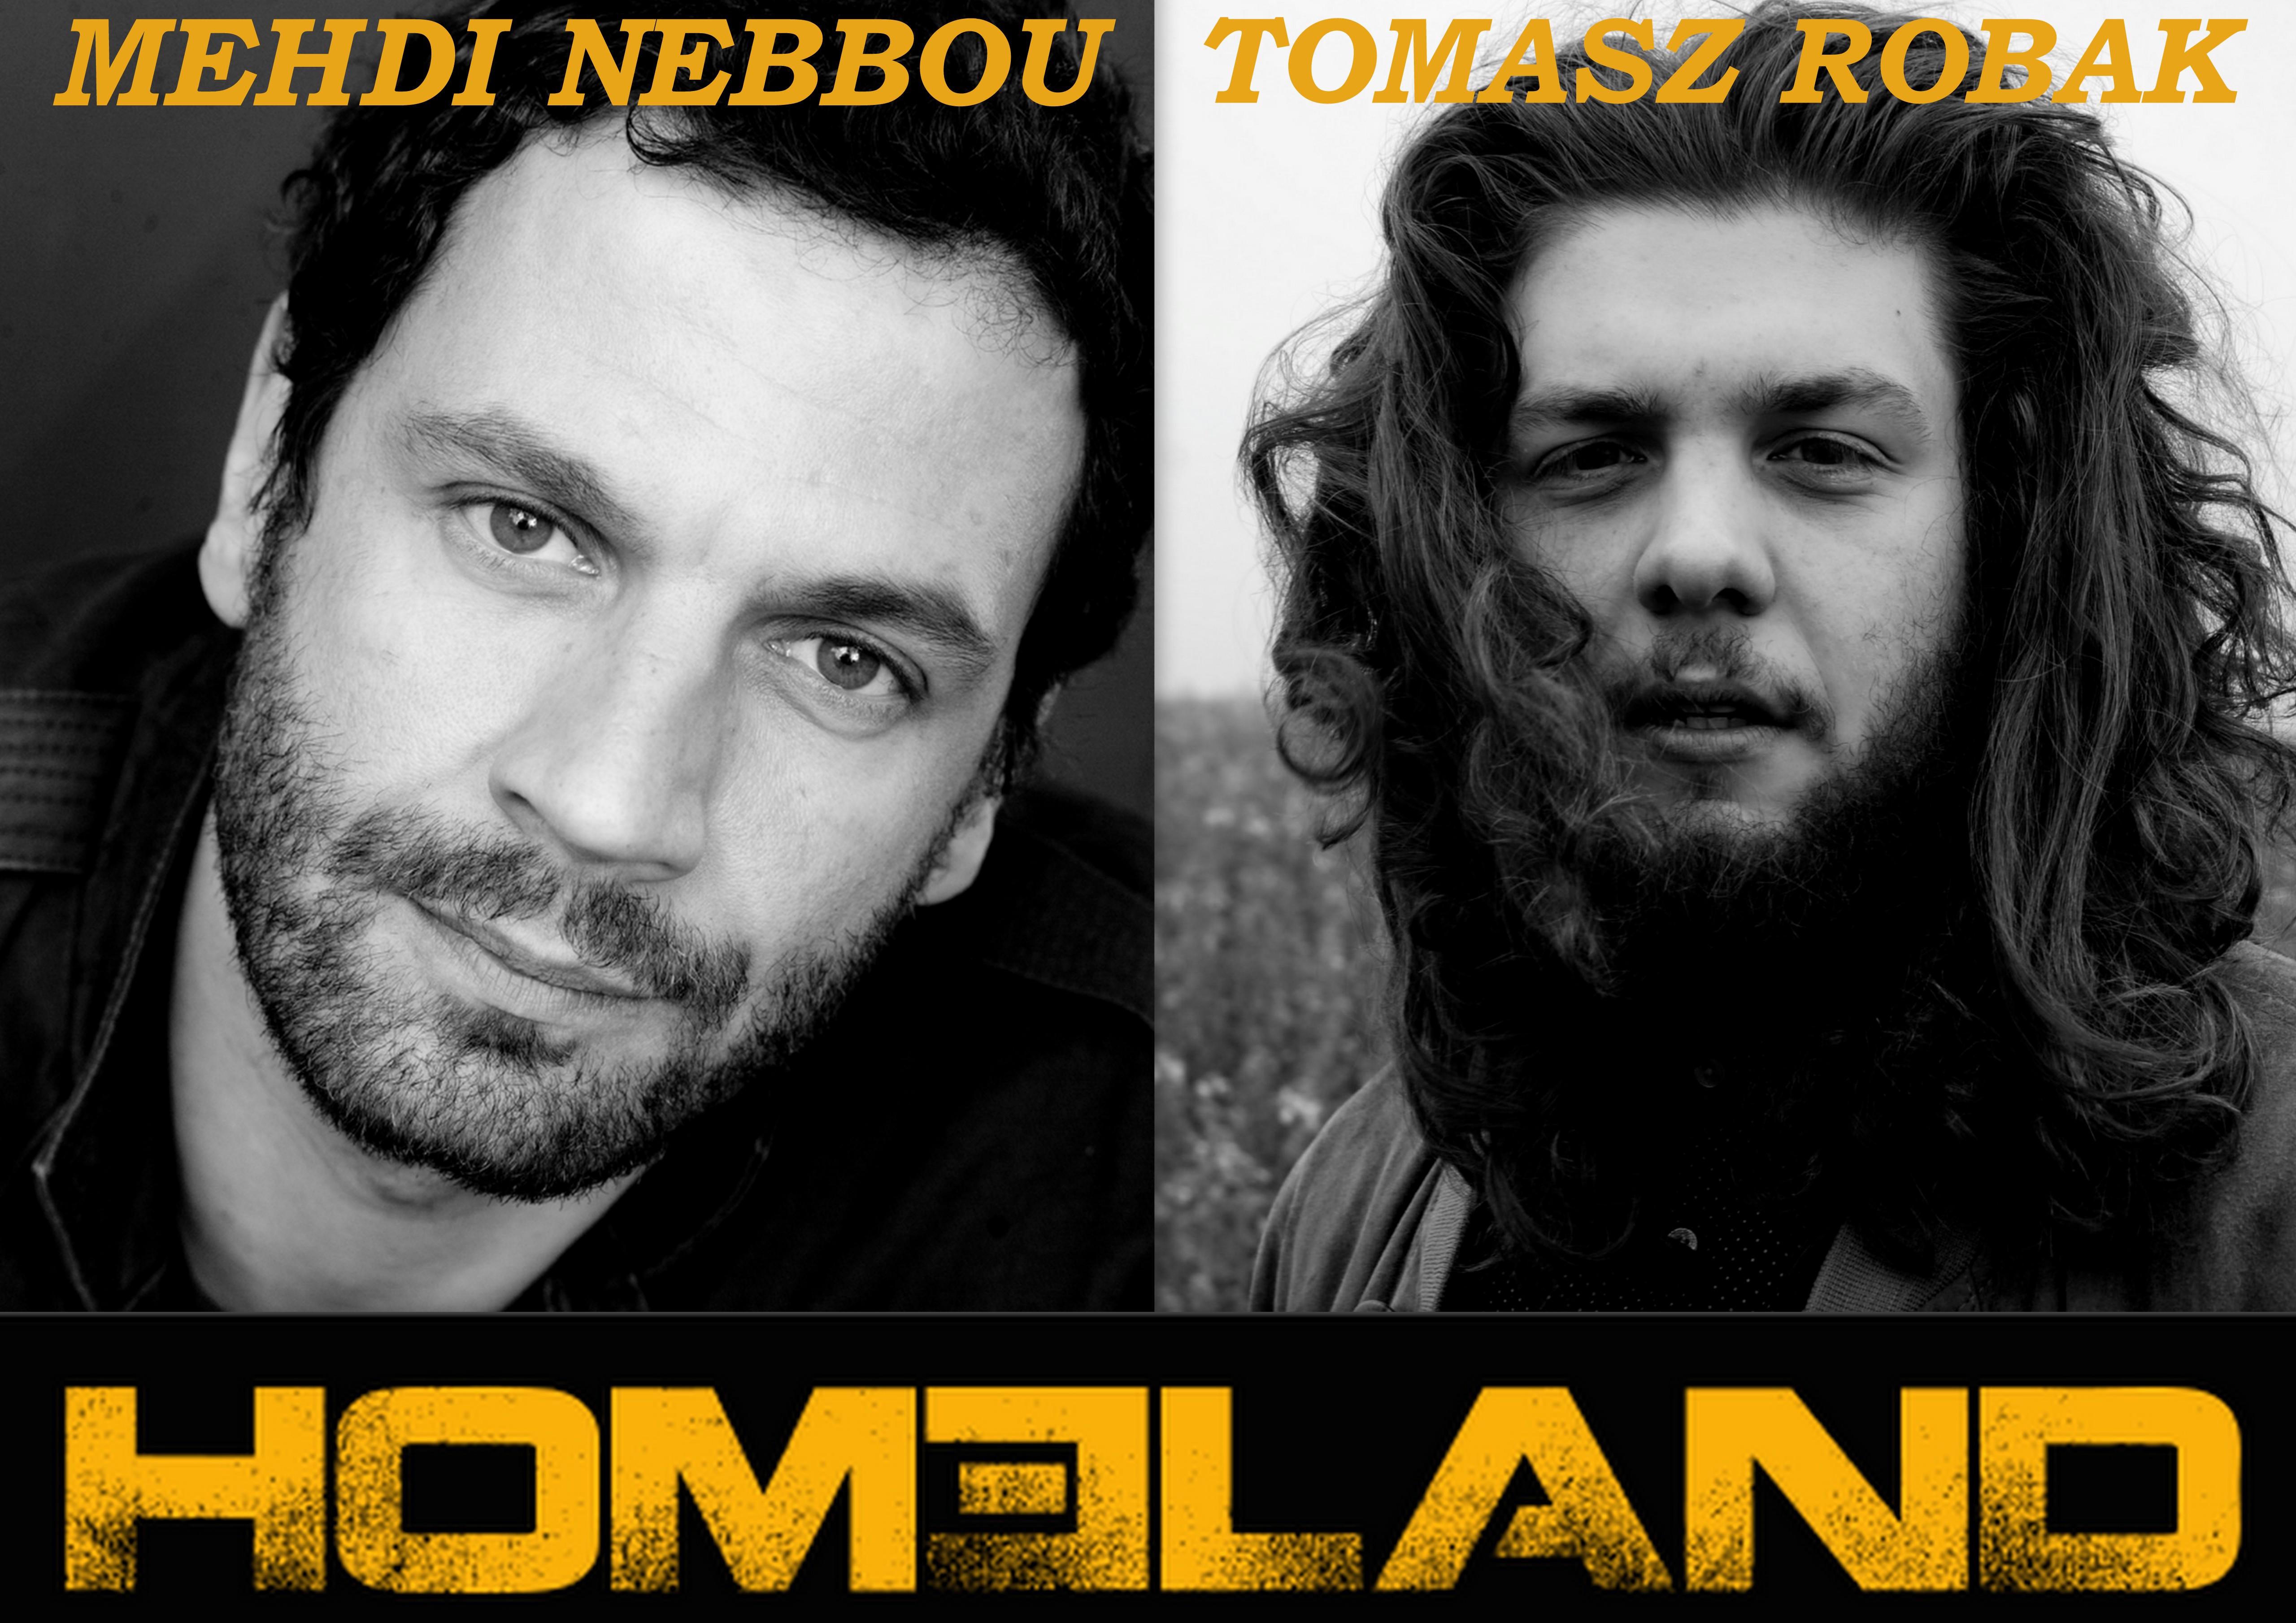 Nebbou & Robak for “Homeland”!